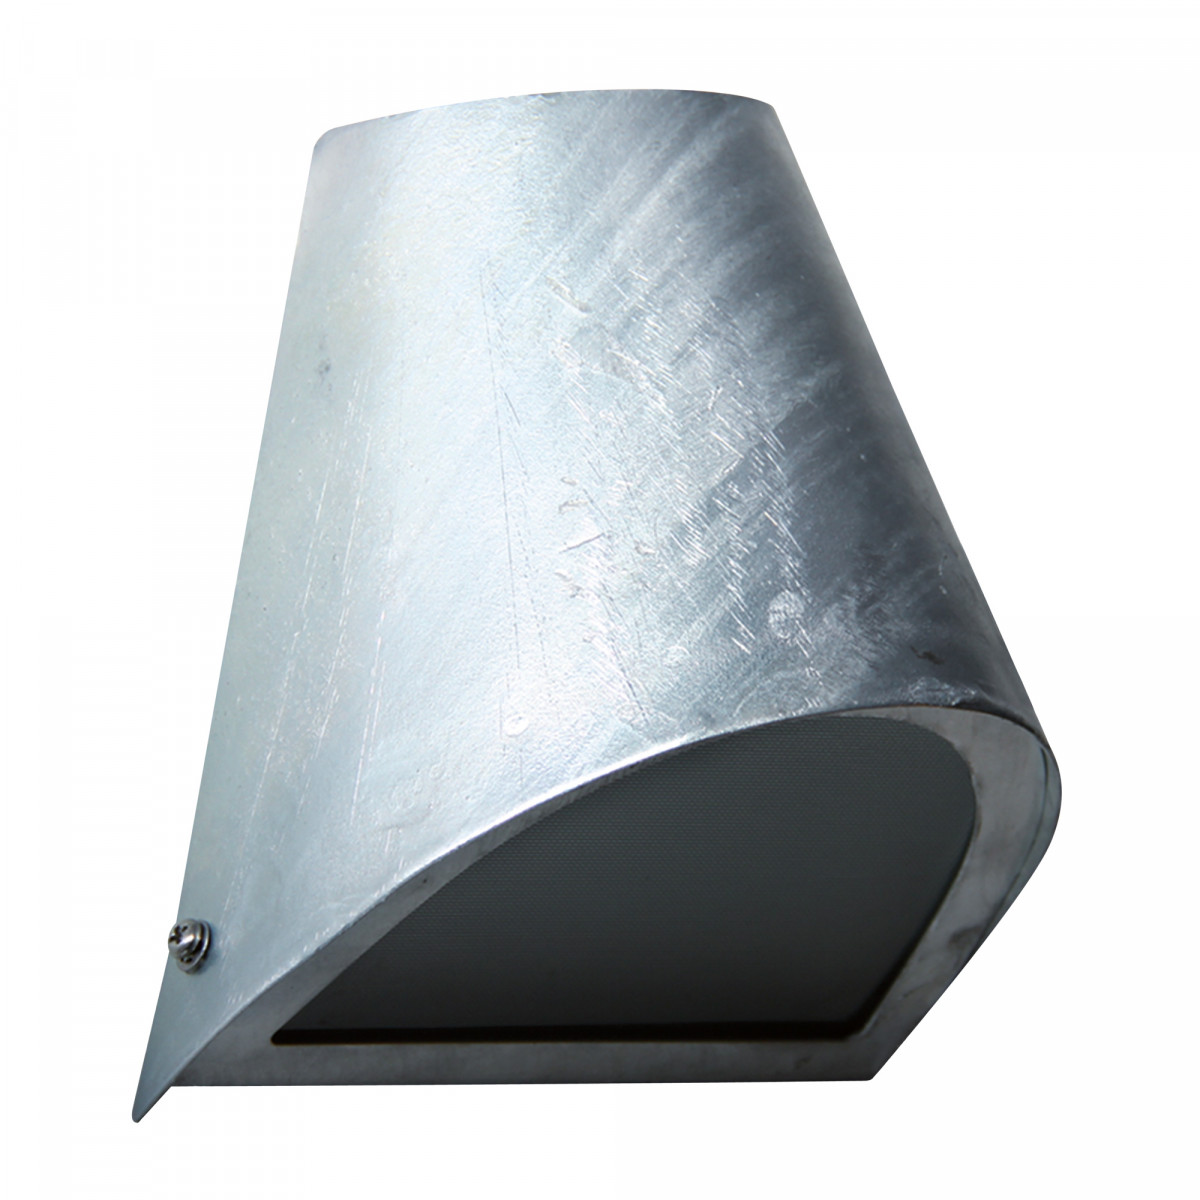 Moderne wandverlichting van gegalvaniseerd staal, ronde vormgeving strijklicht wandspot armatuur, ideaal als gevelverlichting 